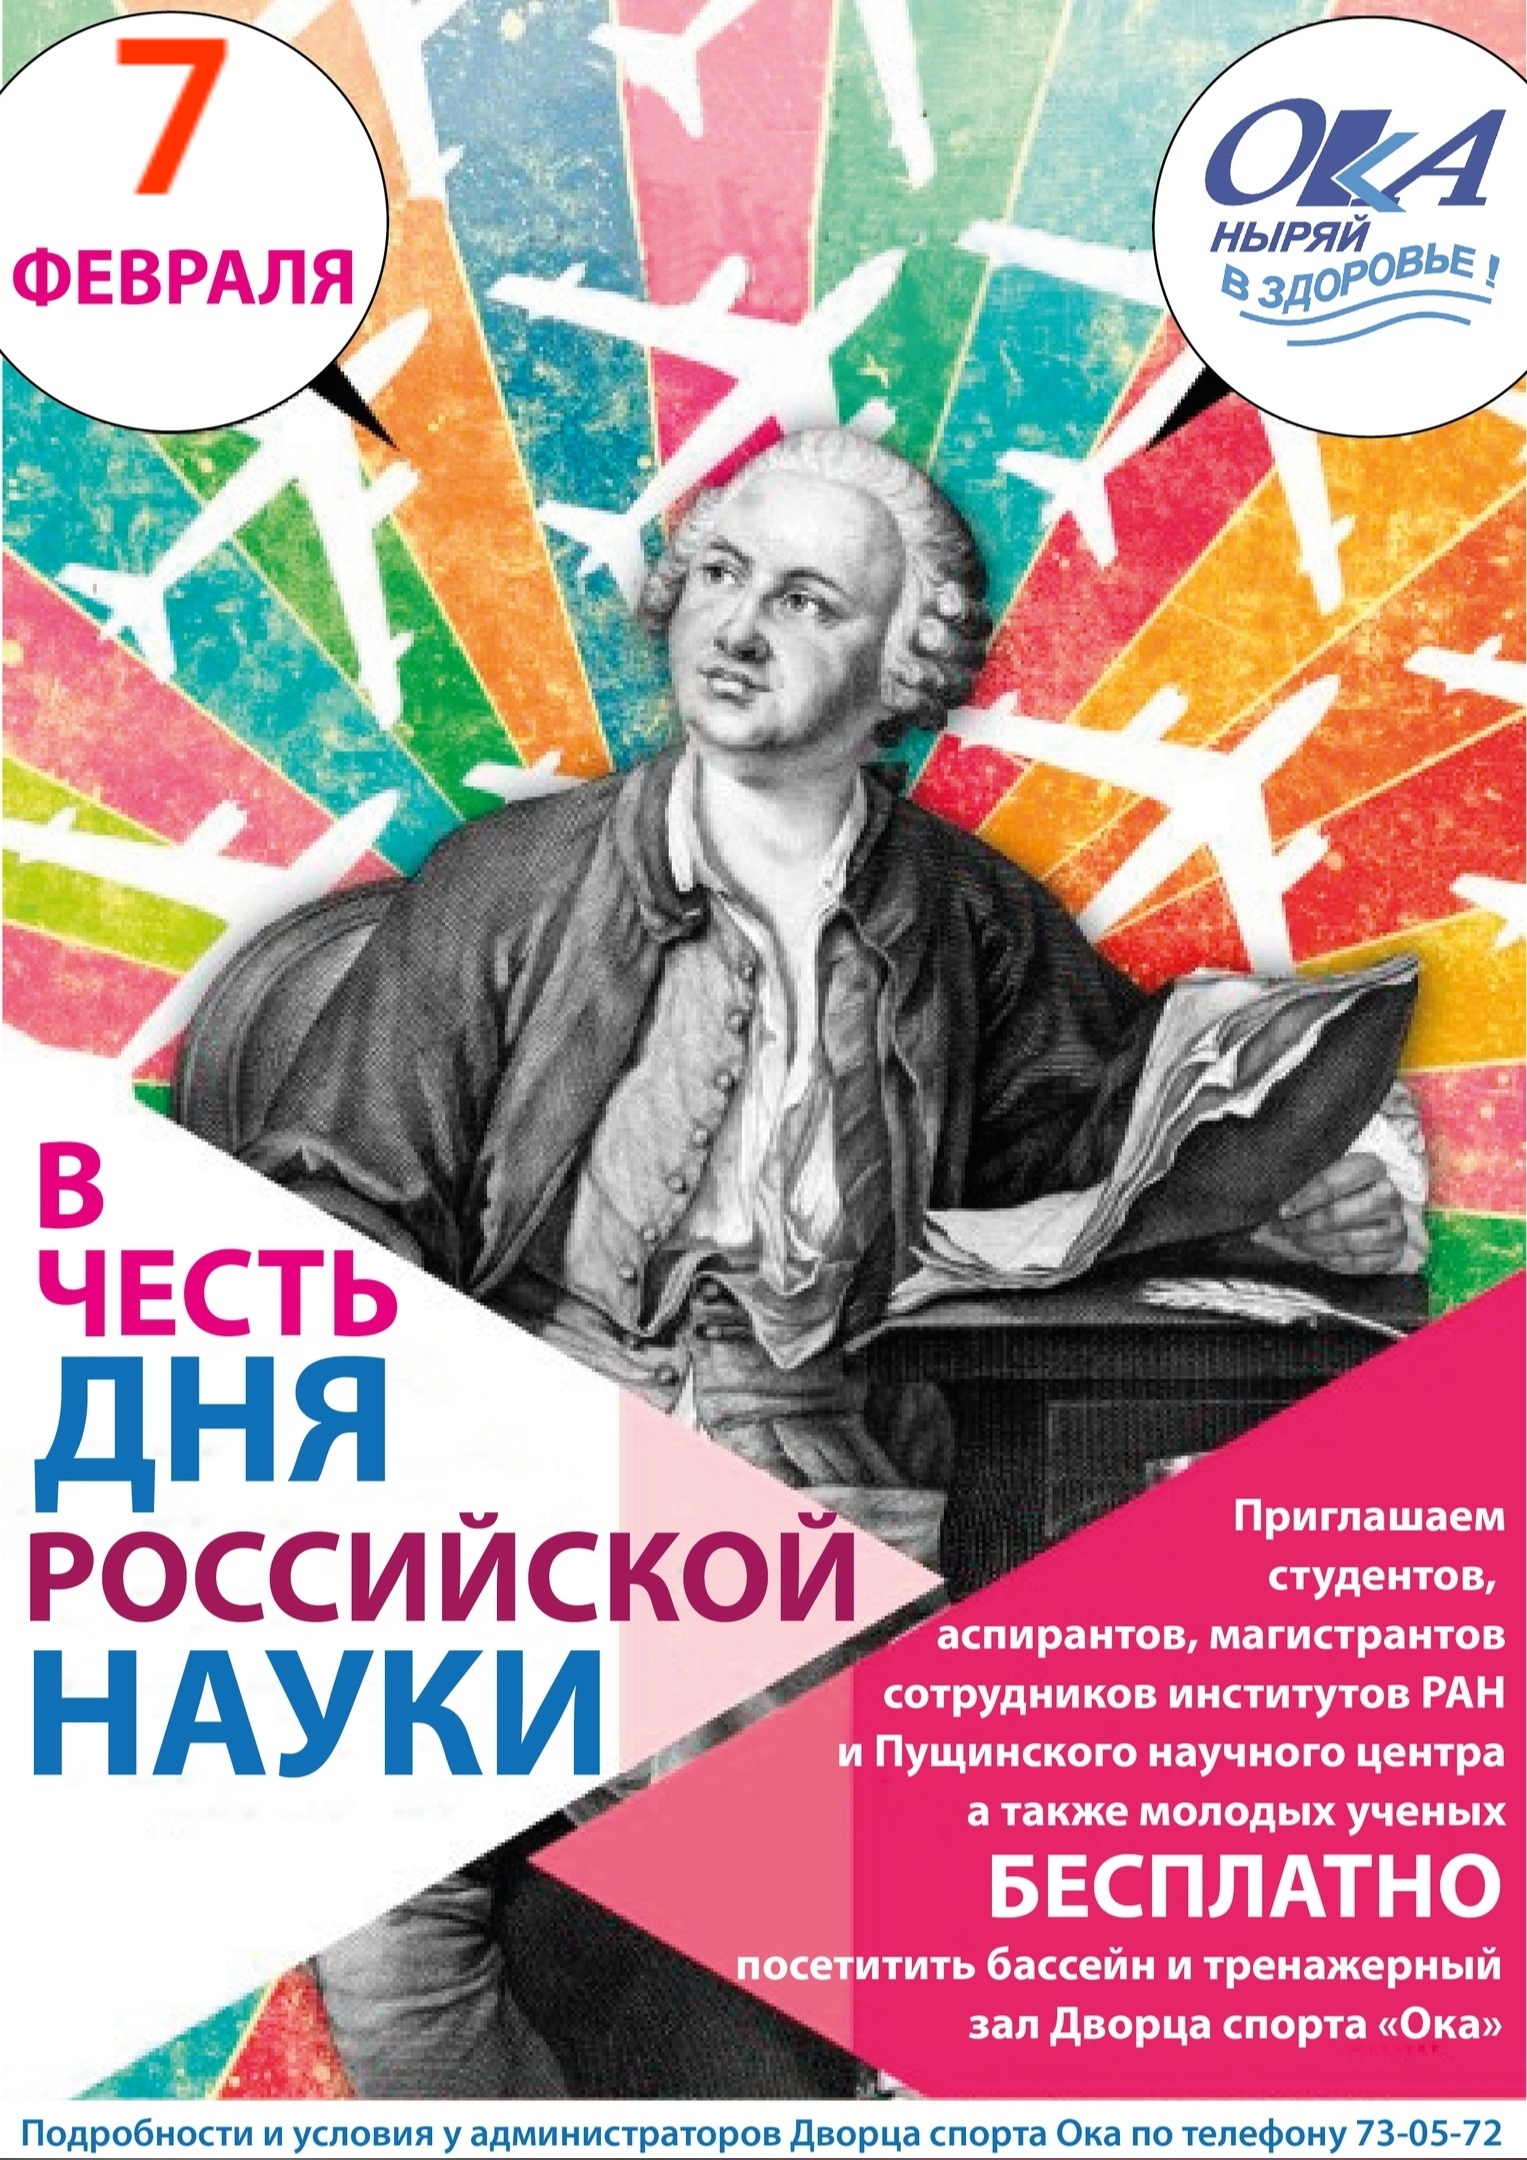 8 февраля — День Российской науки!